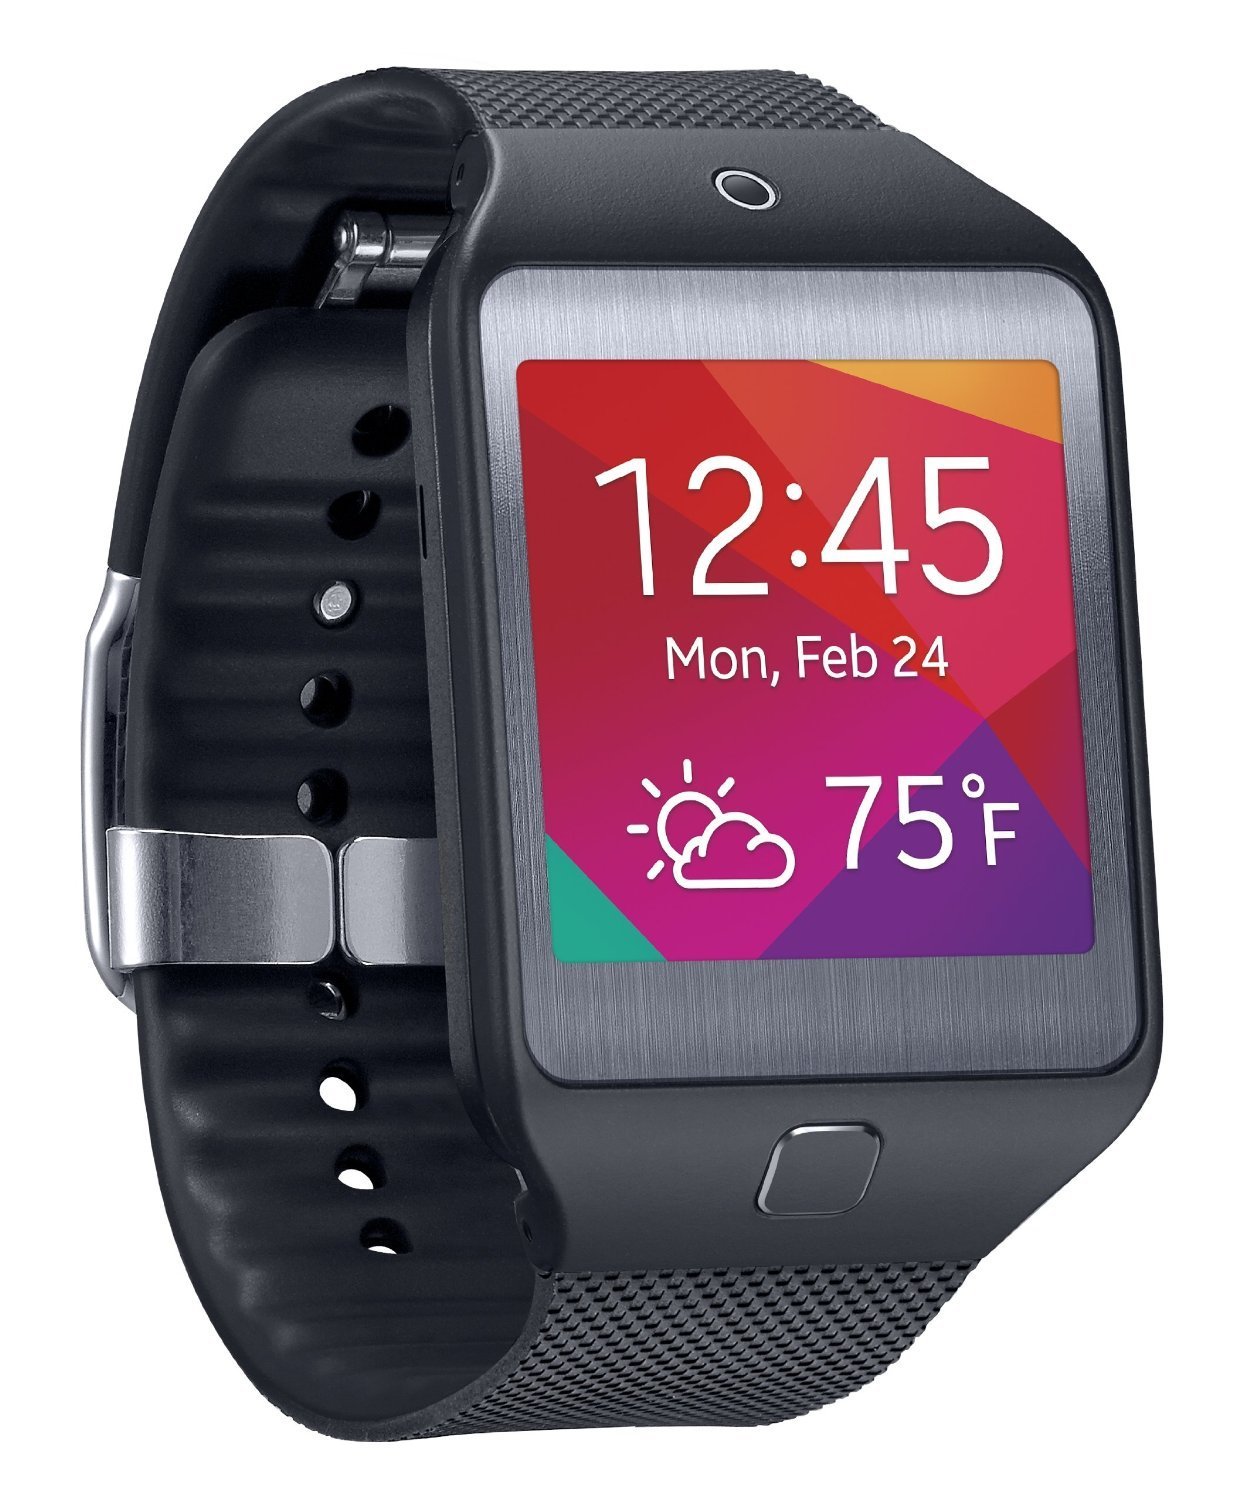 Samsung Gear 2 R380 Smartwatch For Sale In Jamaica